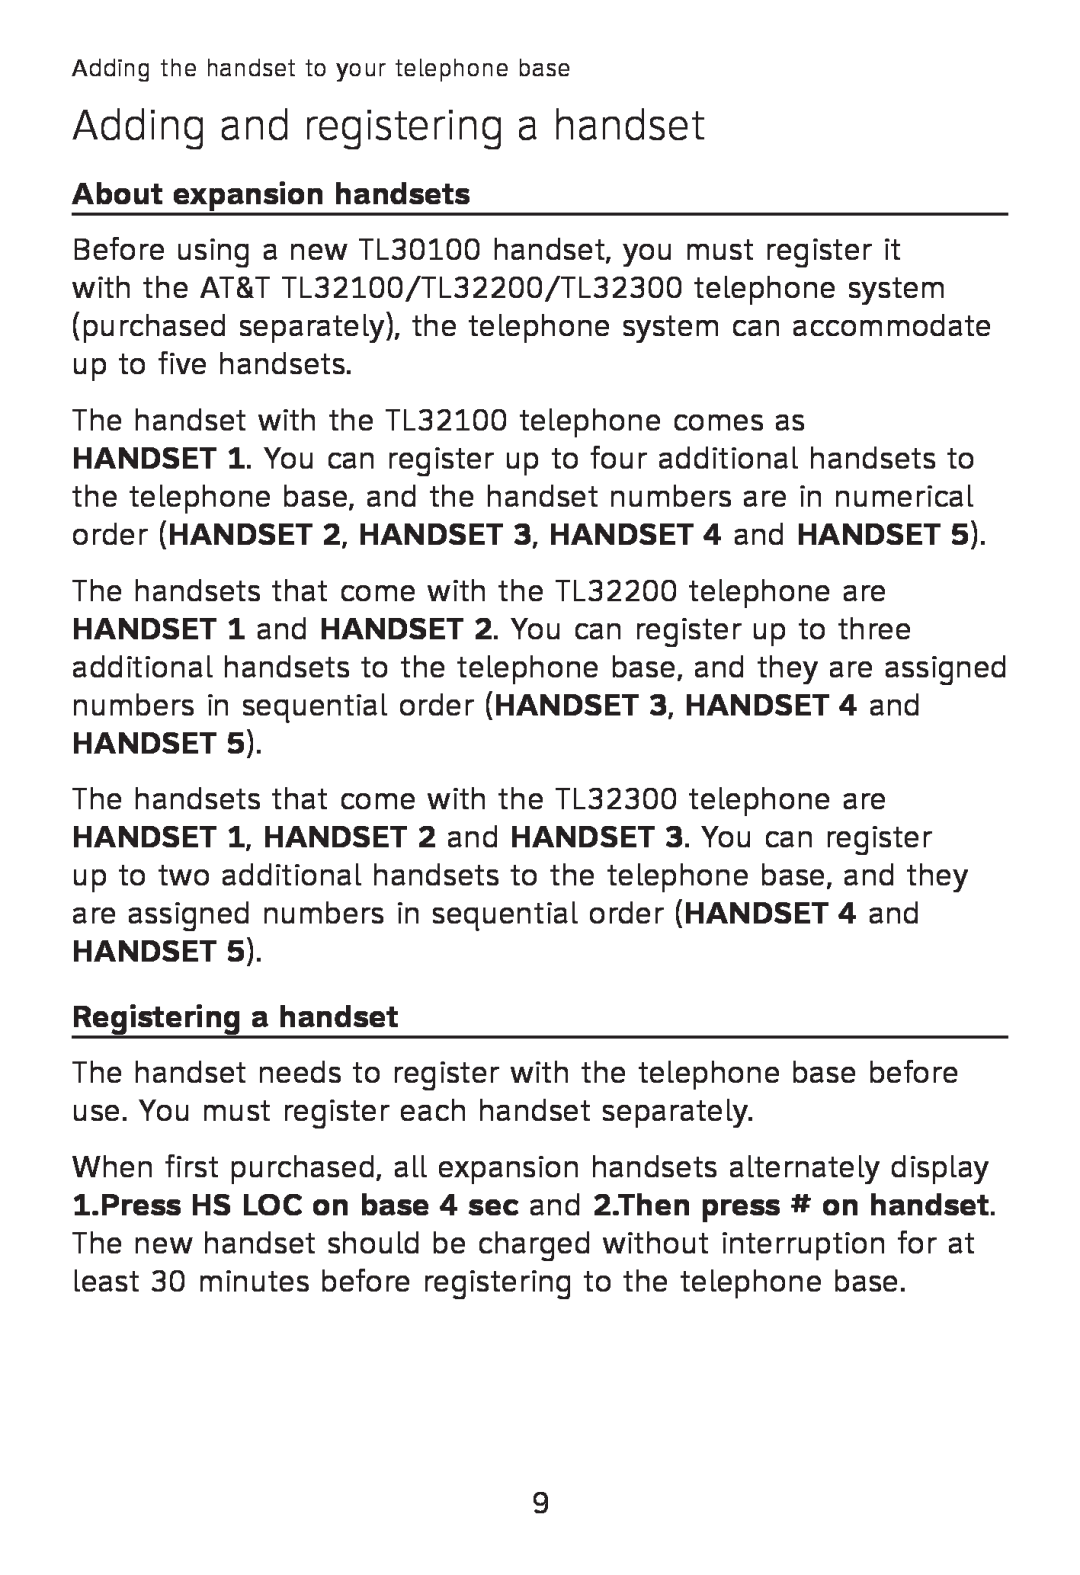 AT&T TL32100, TL32300, TL32200, TL30100 Adding and registering a handset, About expansion handsets, Registering a handset 